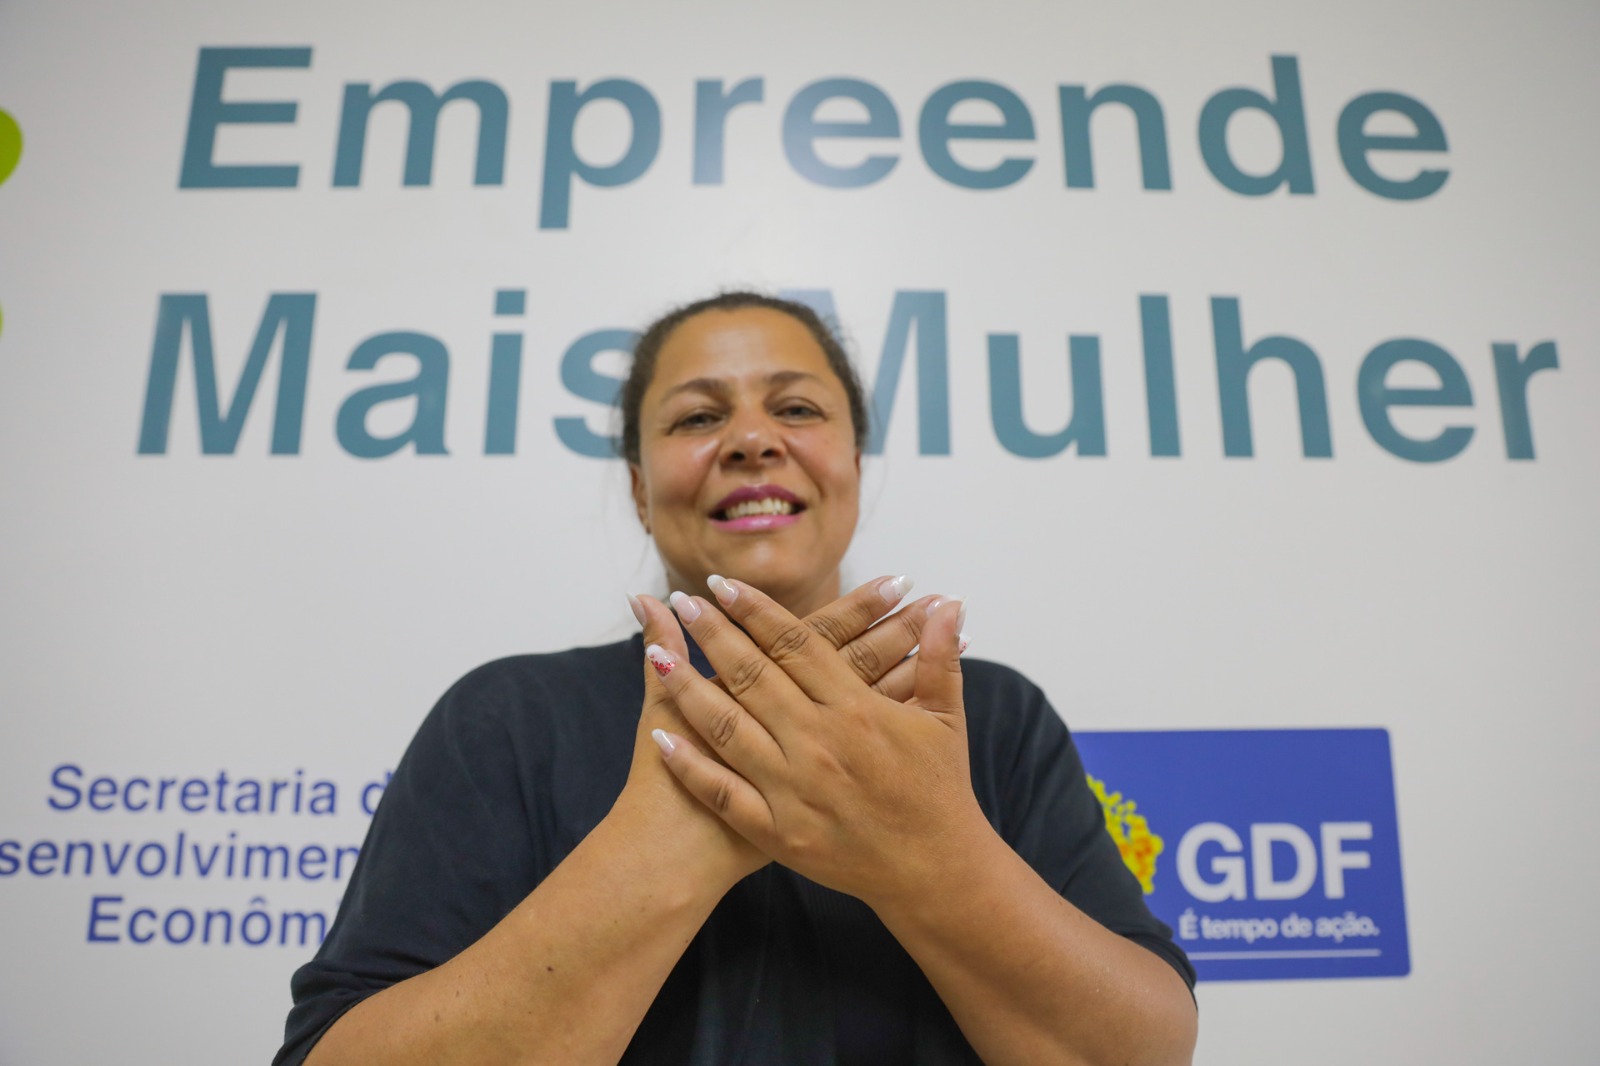 Mulheres qualificadas pelo GDF alcançam sucesso profissional